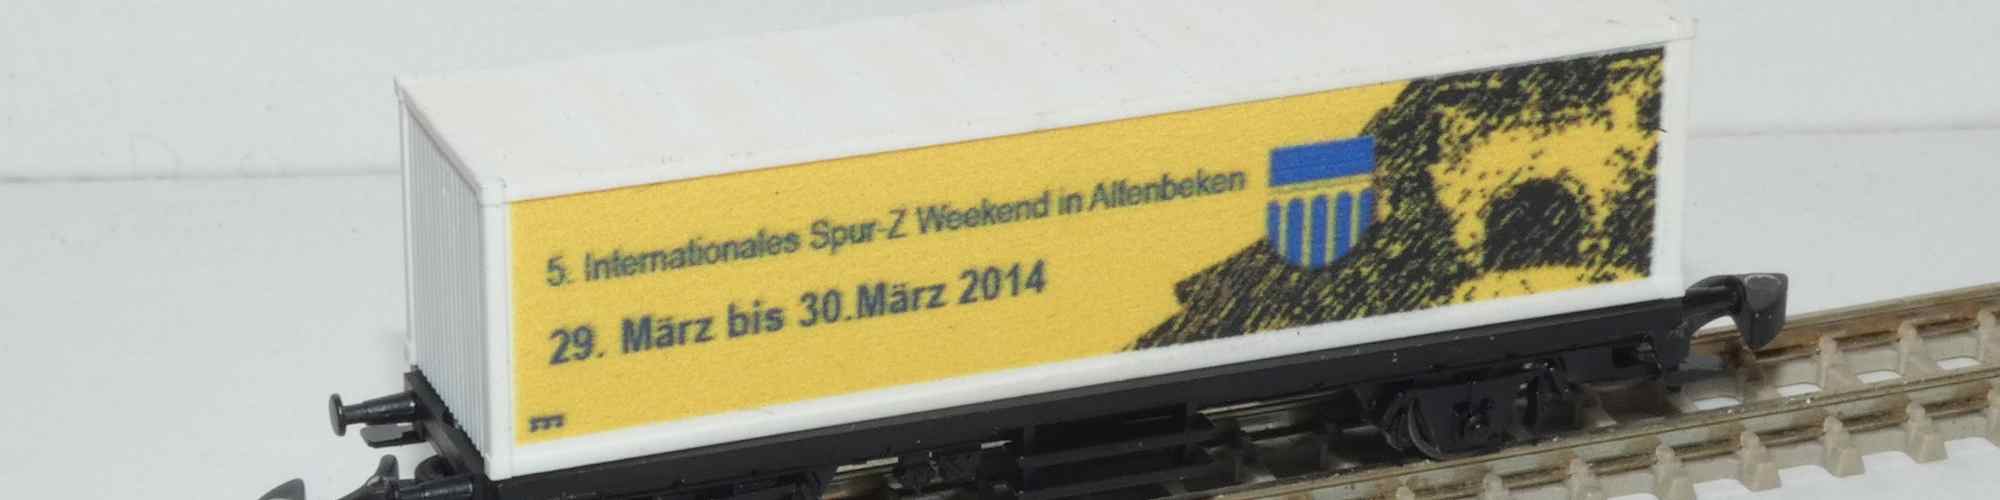 Sonderwagen Altenbeken 2014